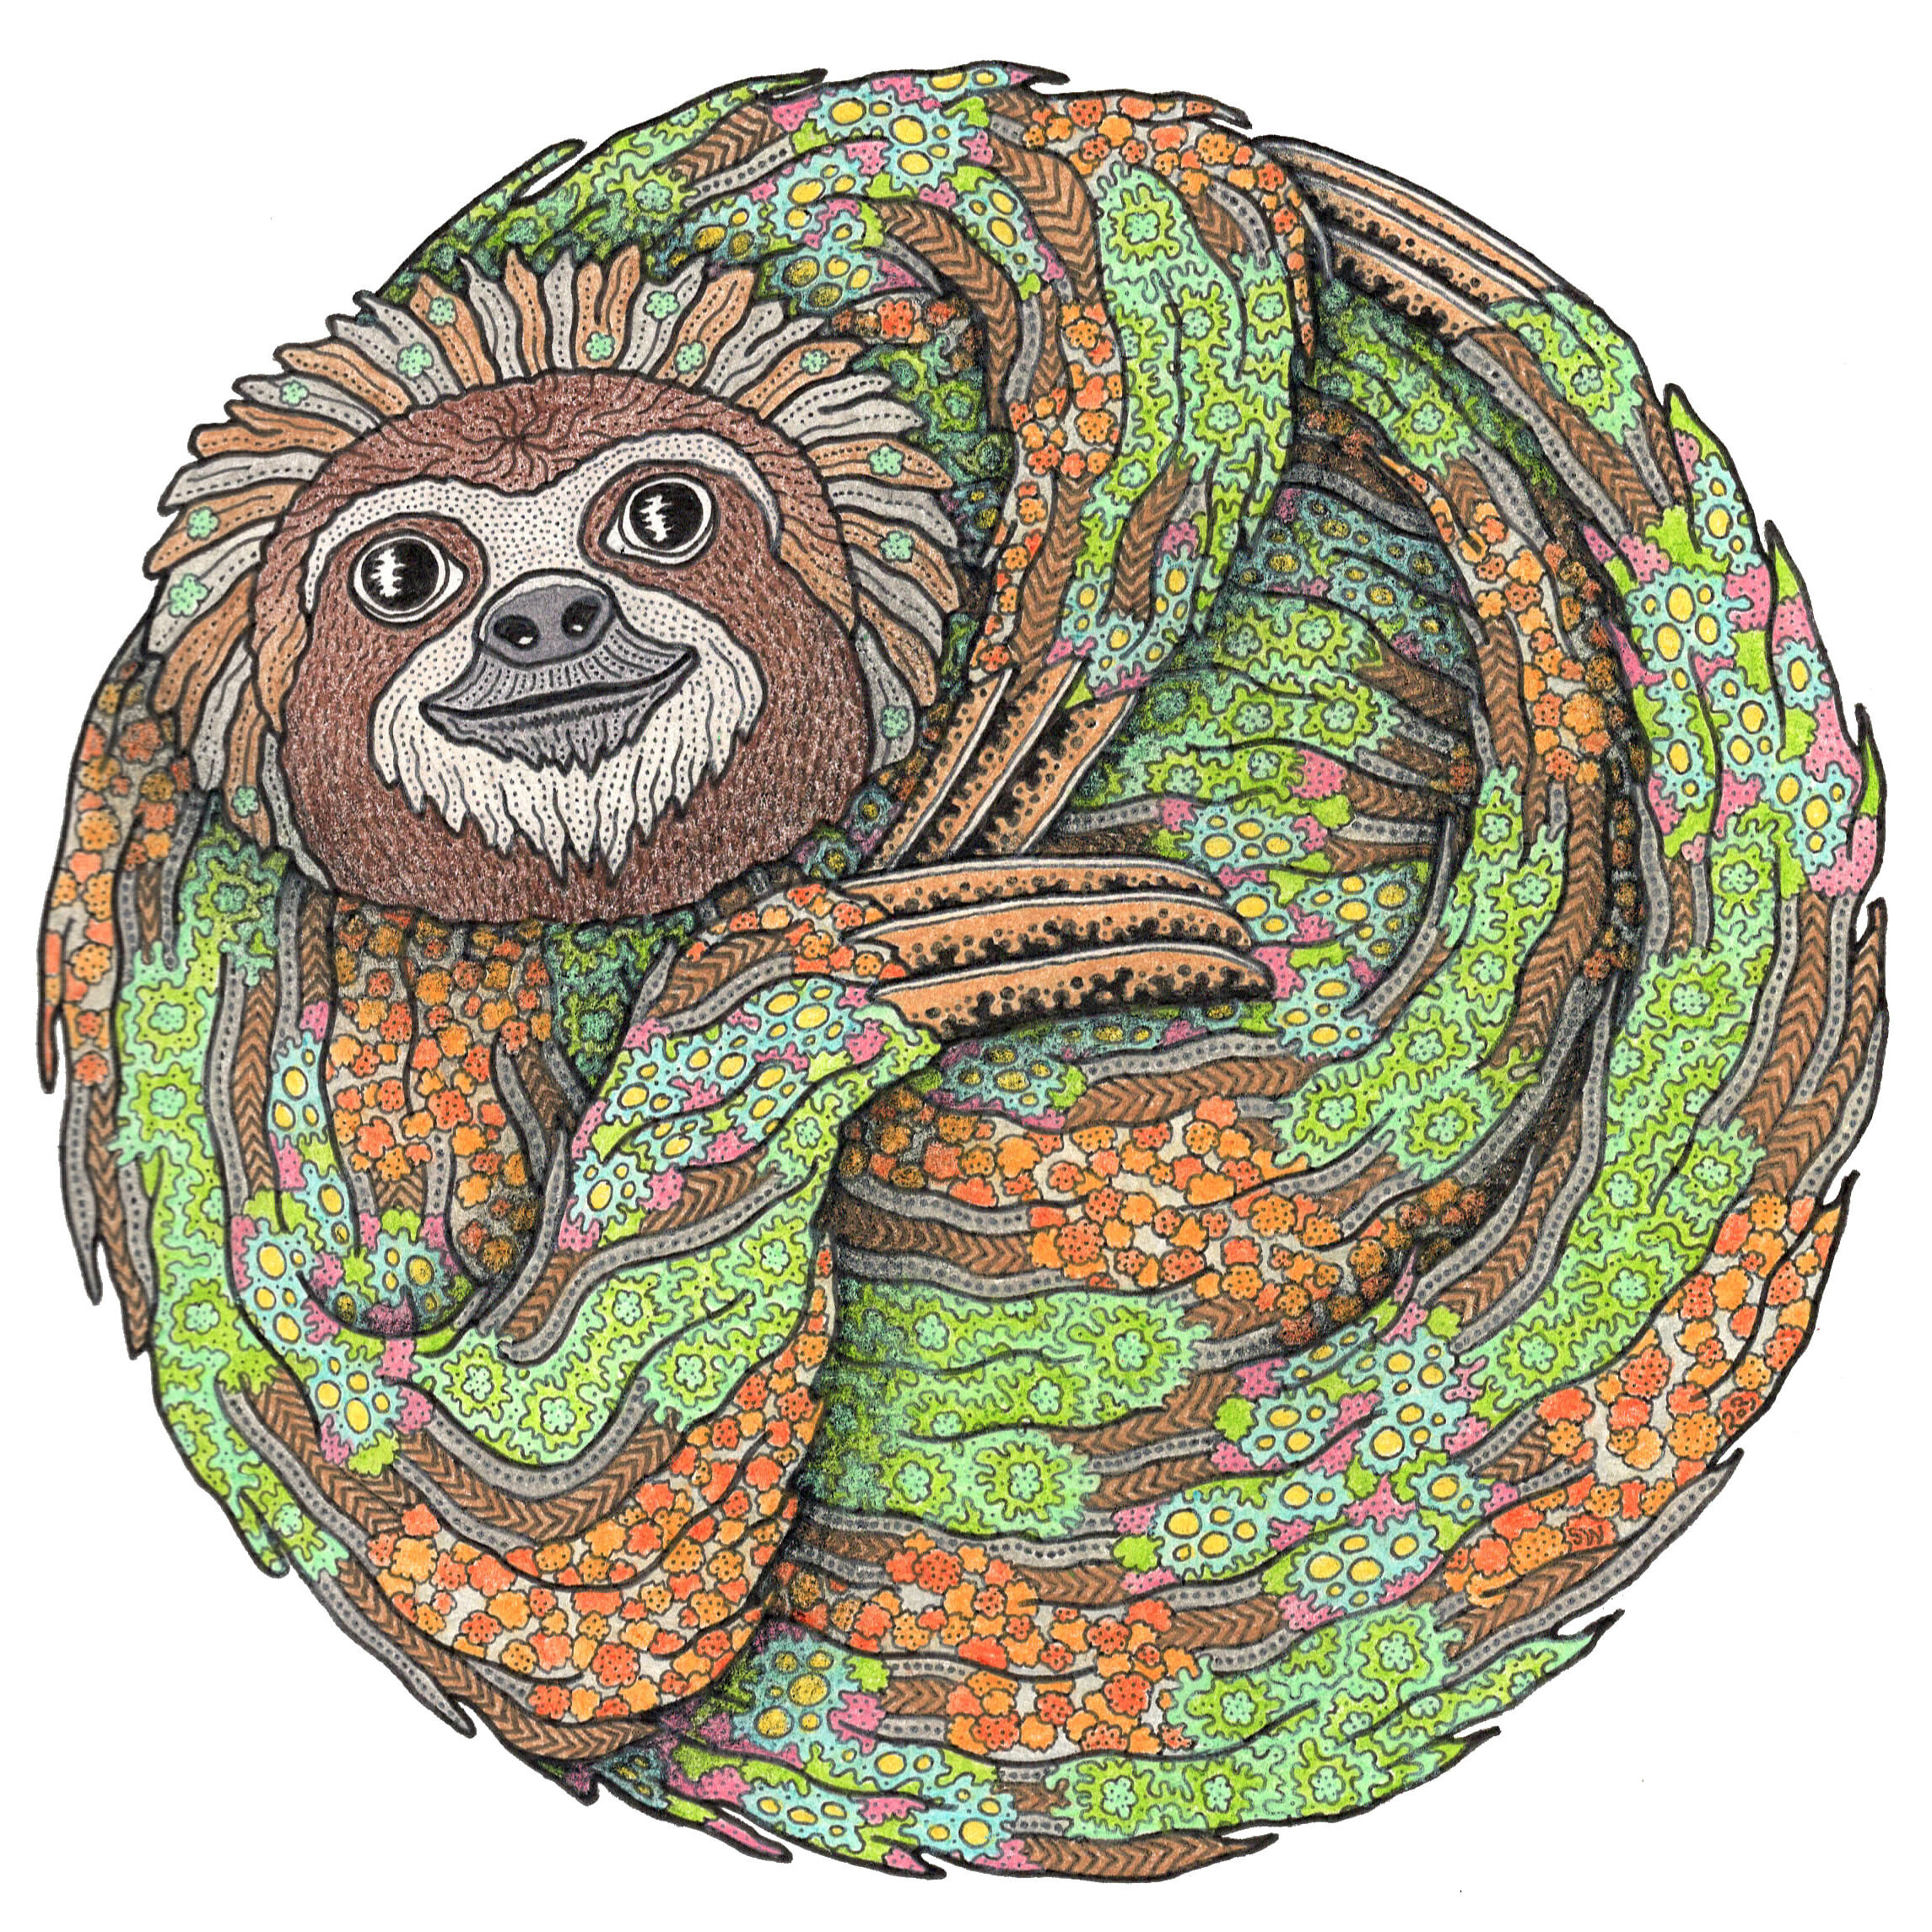 Three-toed Sloth 2021 - Copy